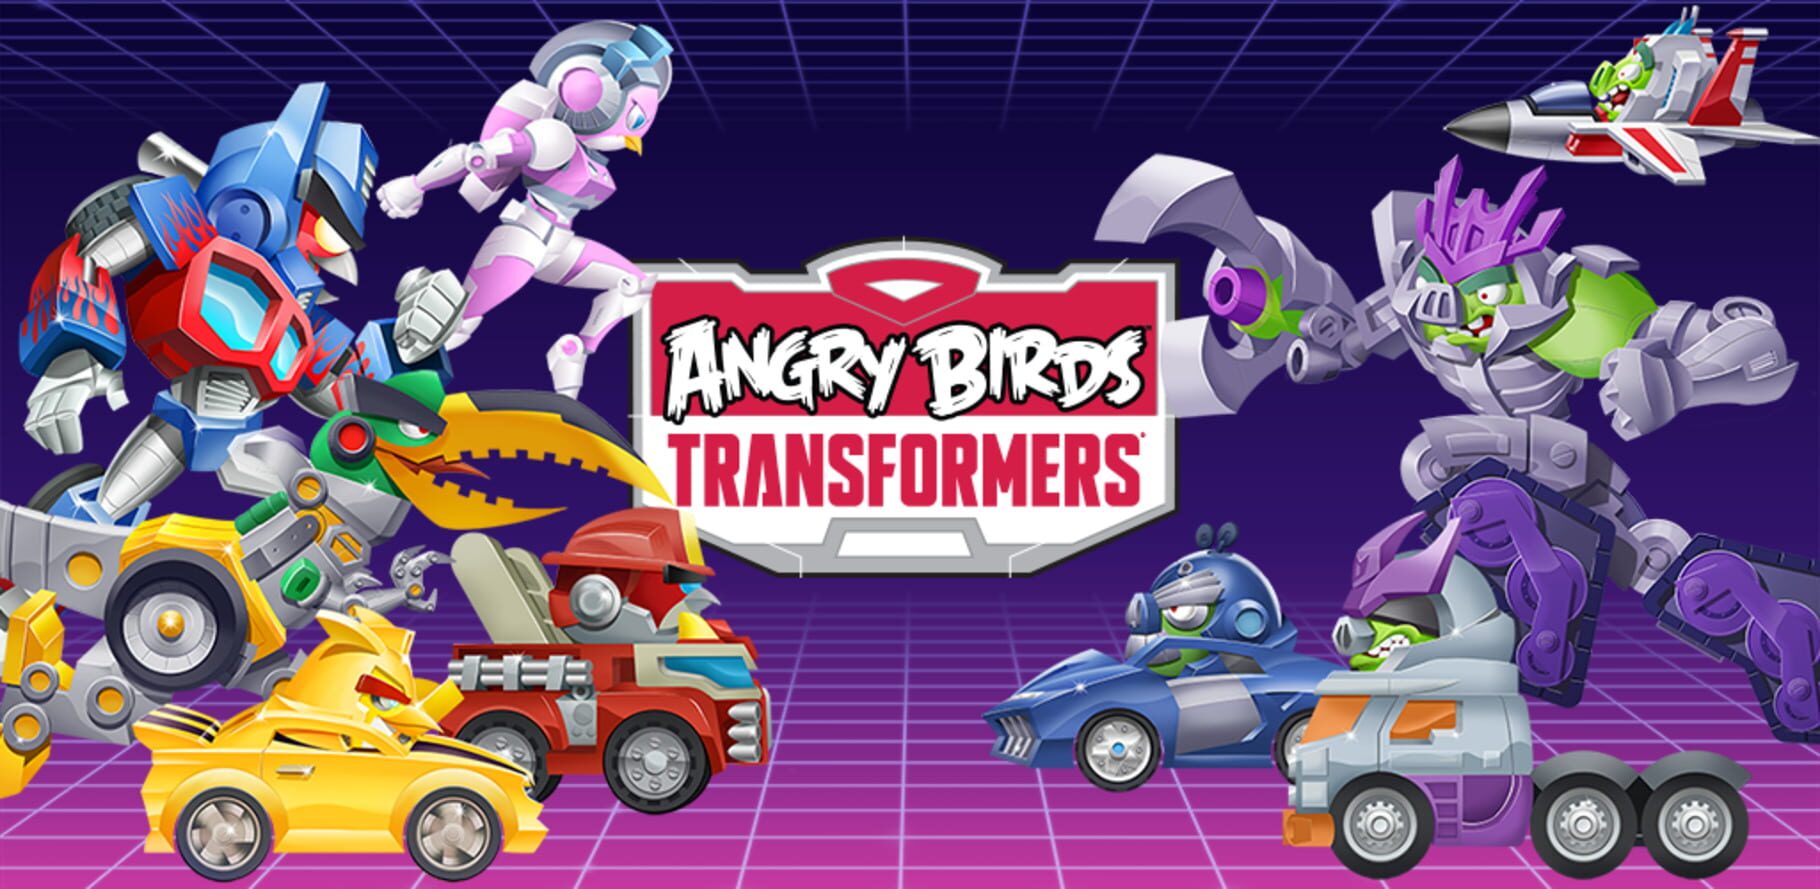 Arte - Angry Birds Transformers